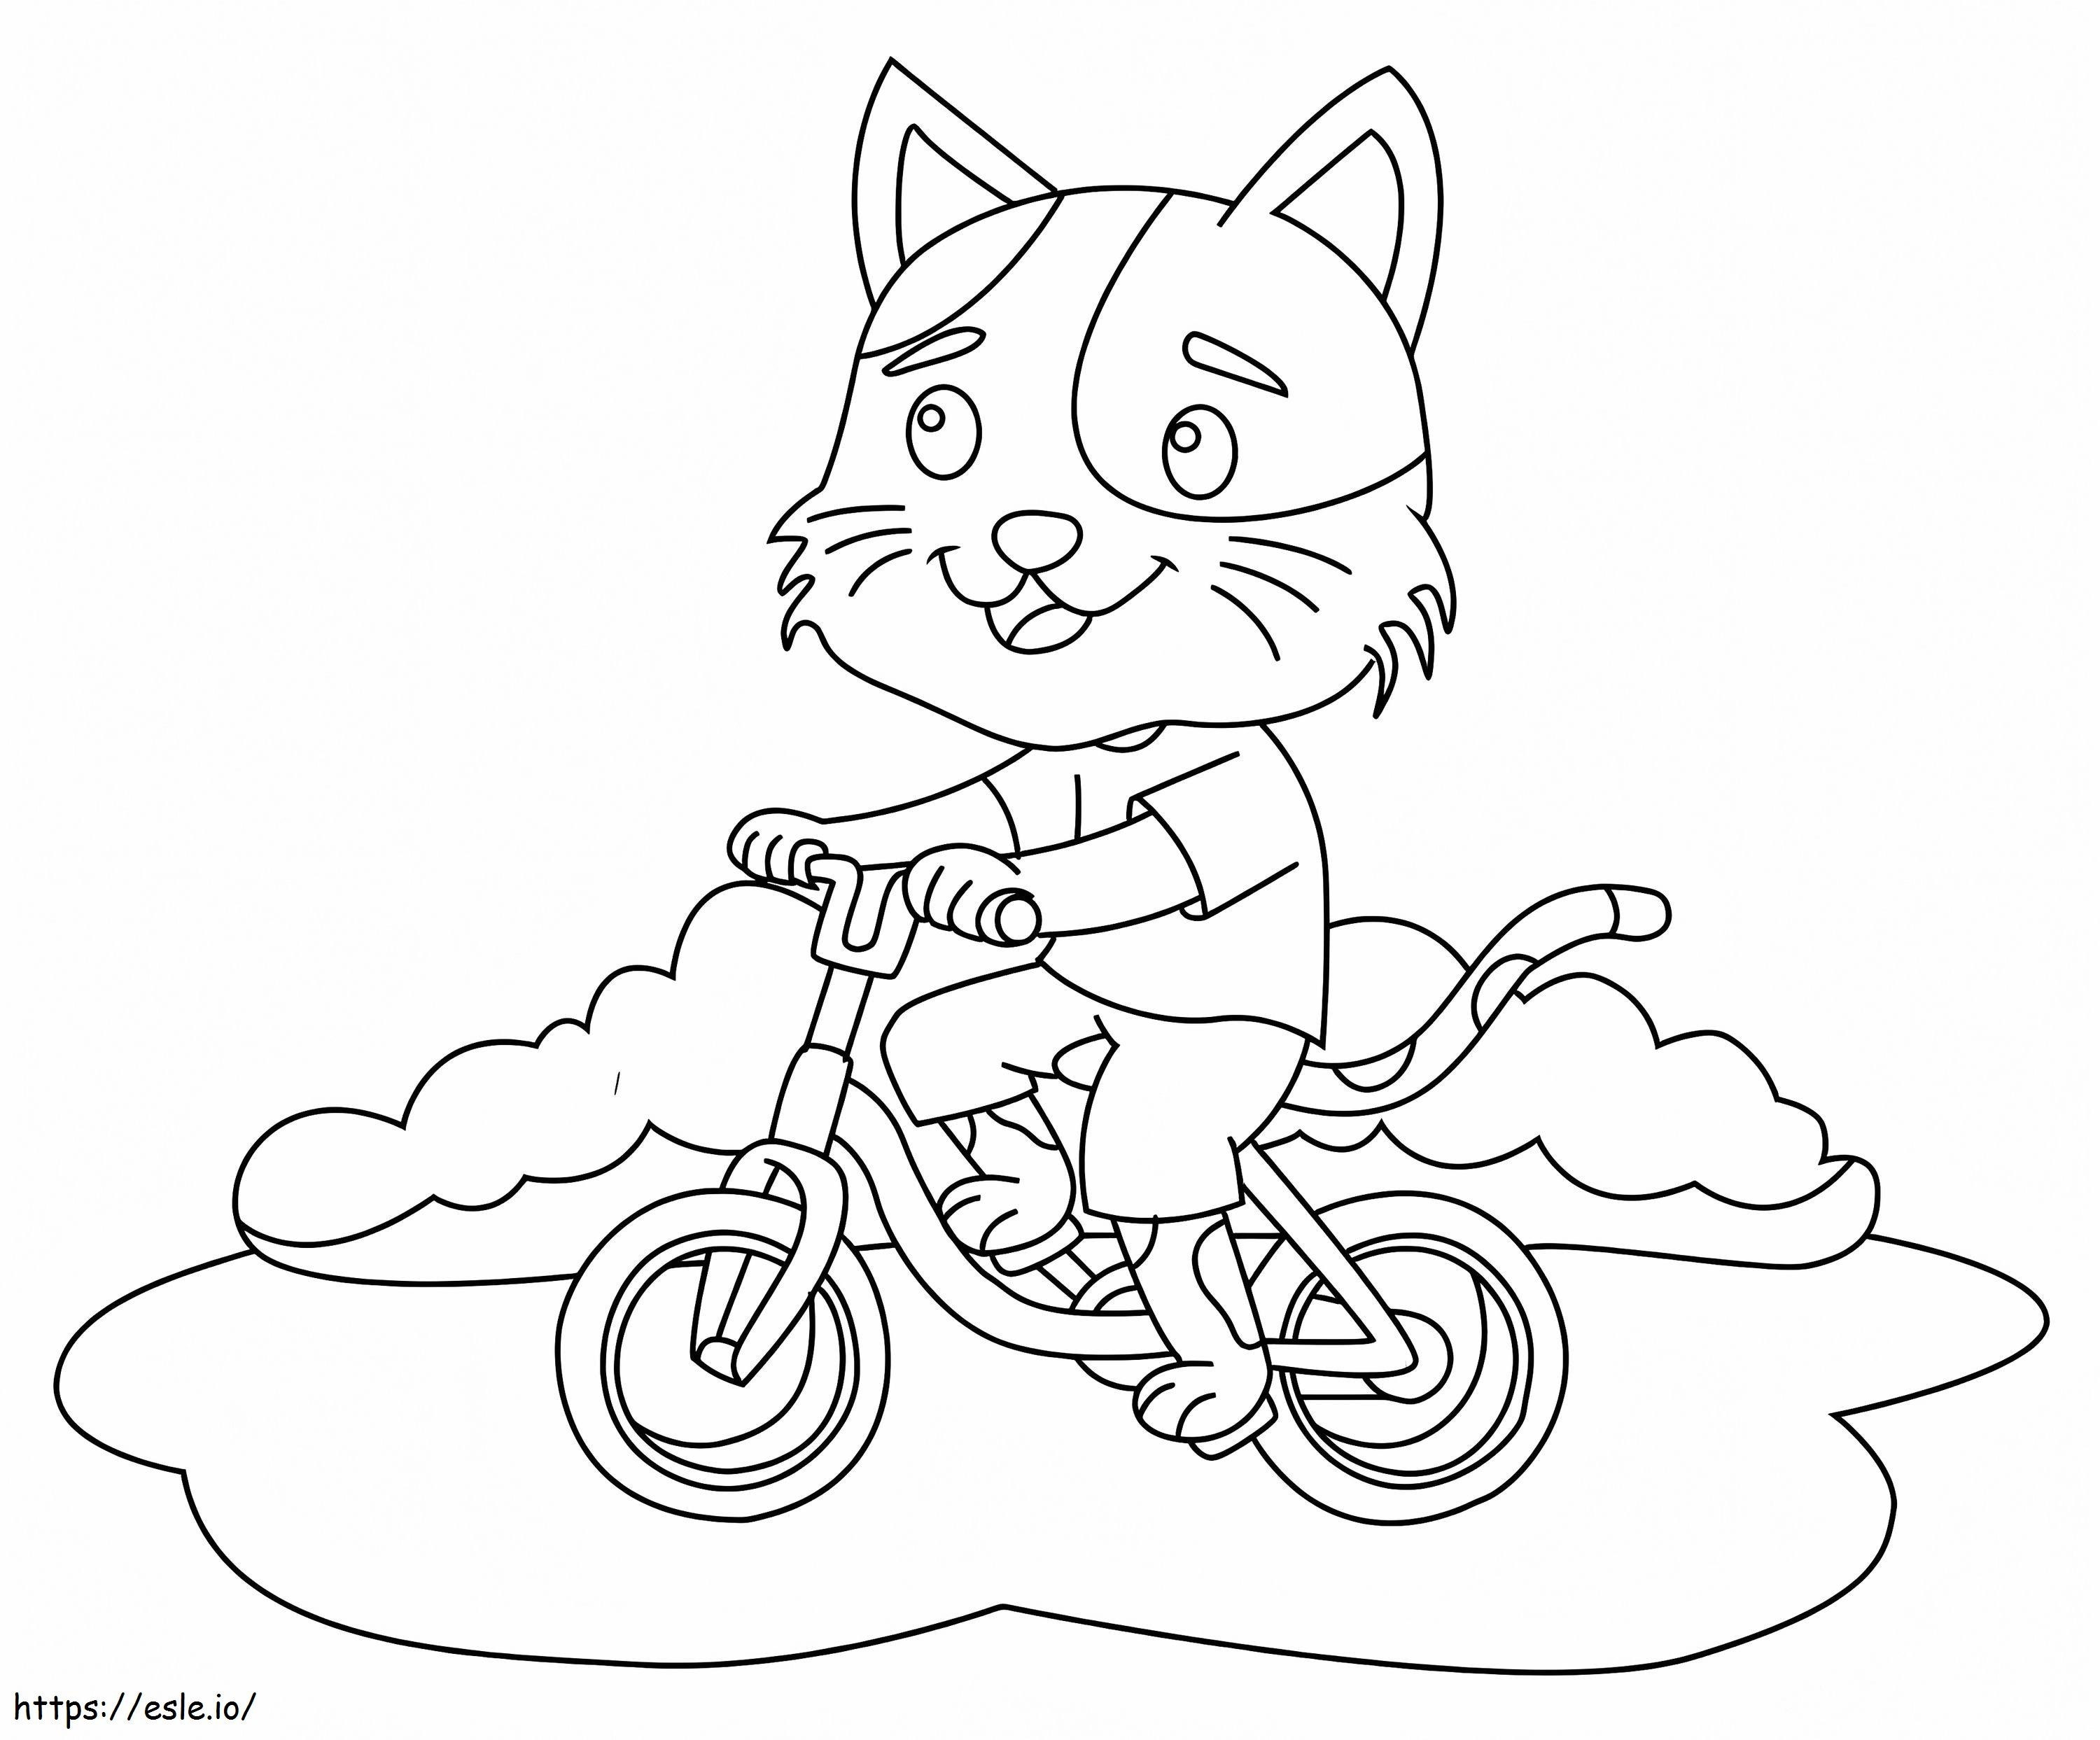 Bisiklete binen kedi boyama